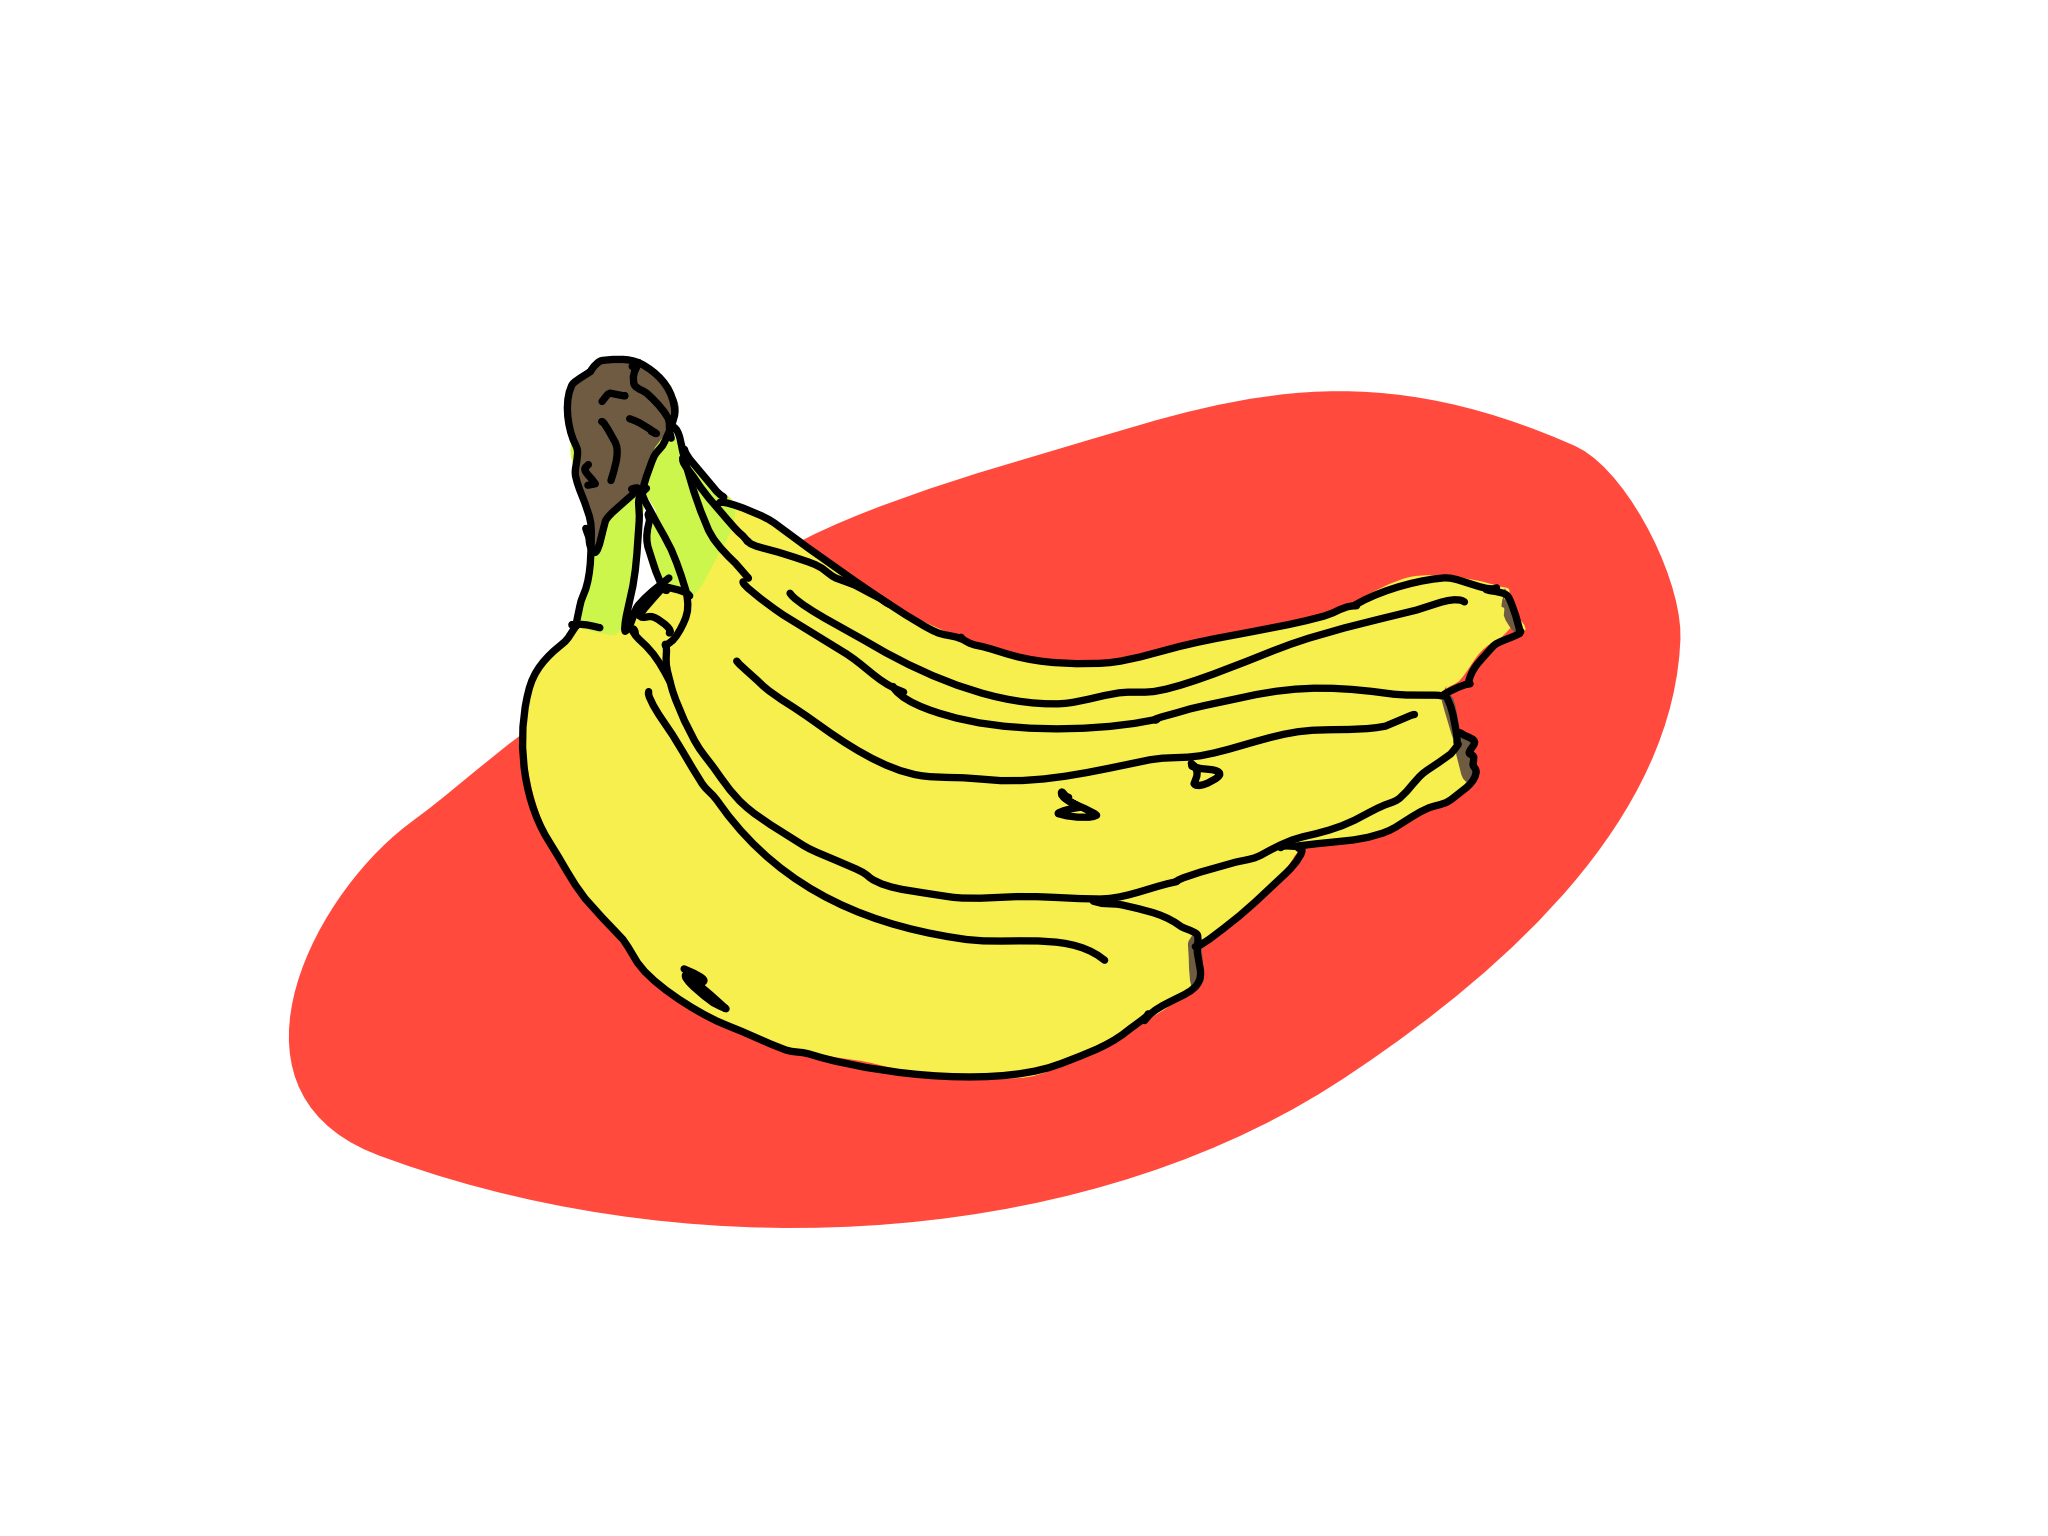 Banana-nana-no?